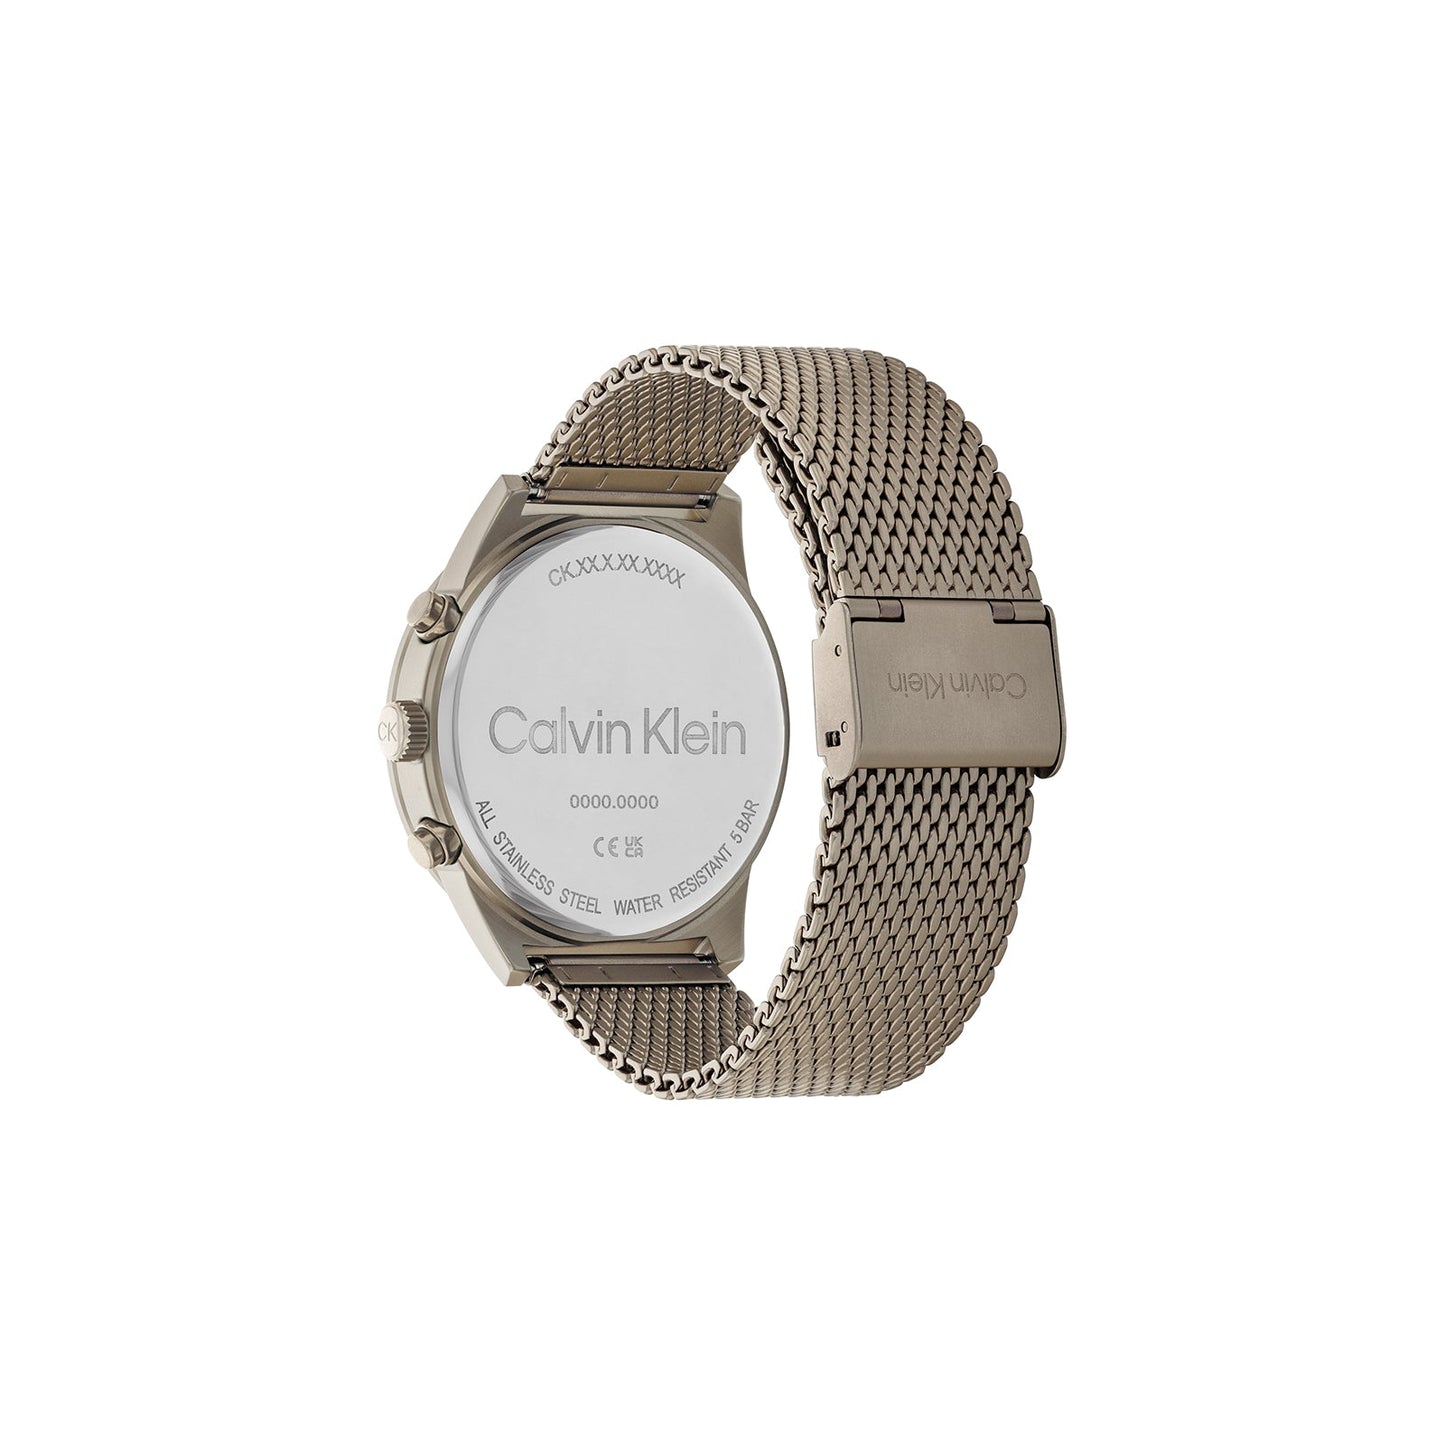 Calvin Klein 25200297 Men's Steel Mesh Watch